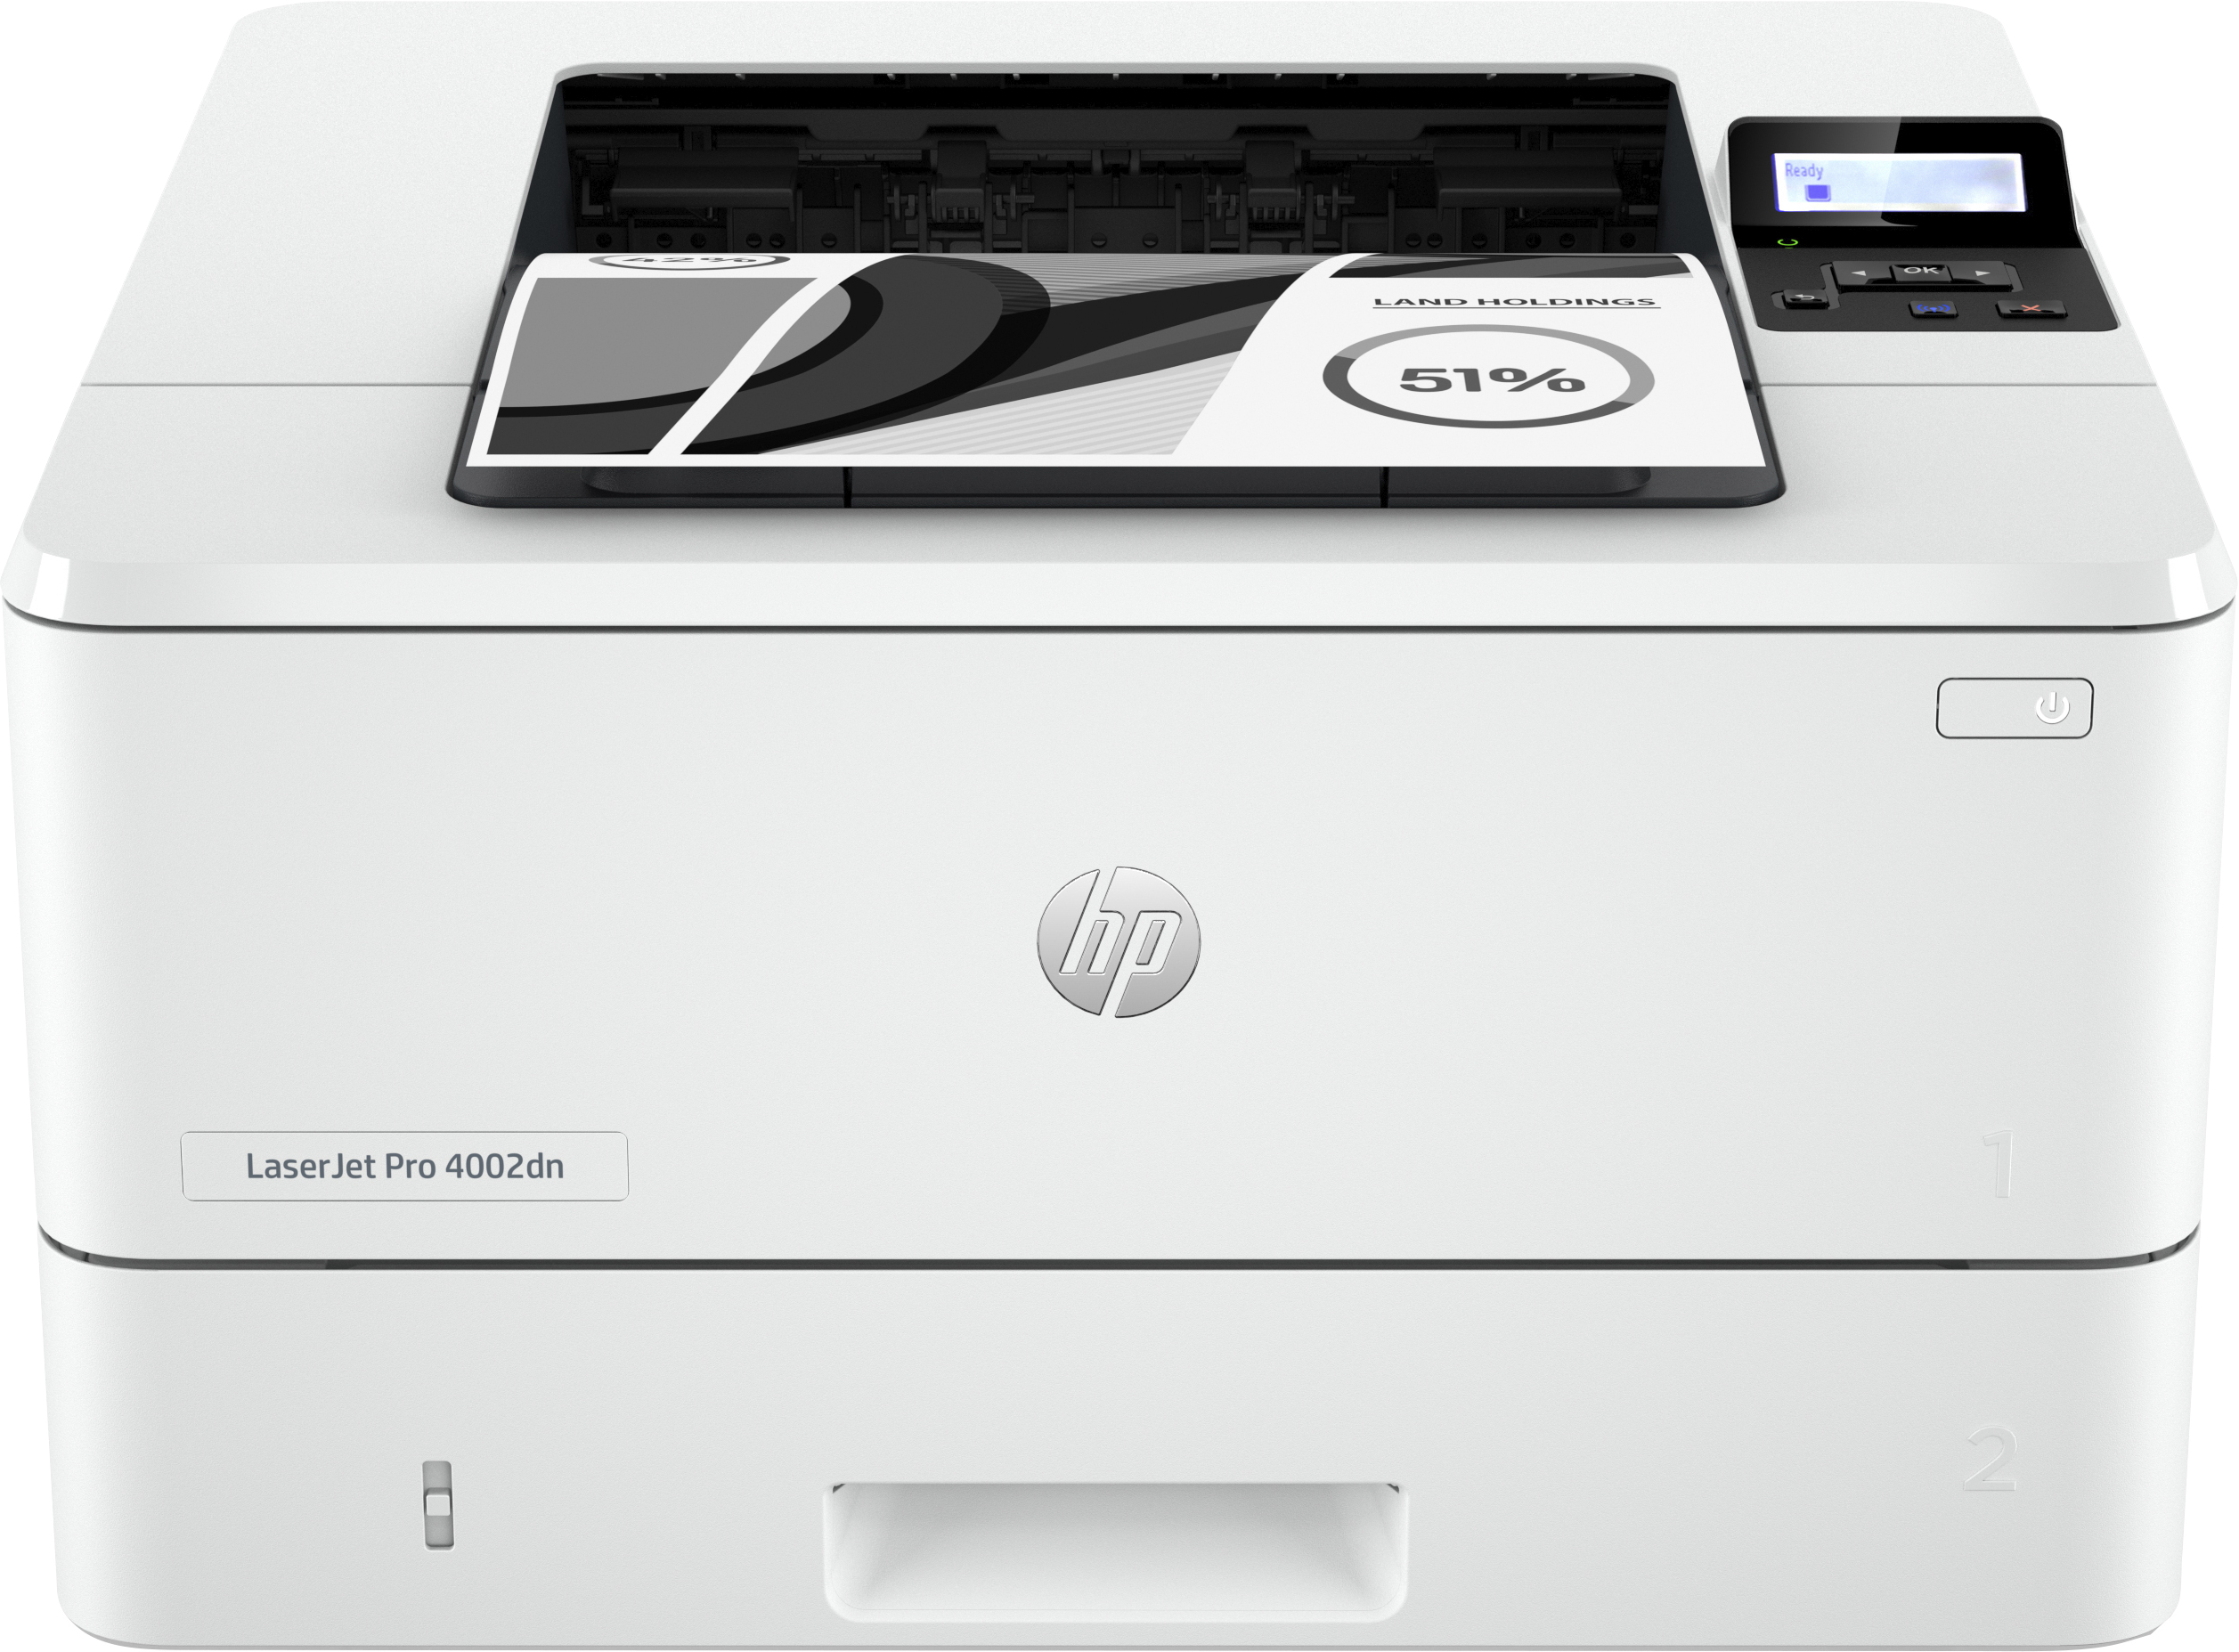 HP LaserJet Pro Stampante 4002dn, Bianco e nero, Stampante per Piccole e medie imprese, Stampa, Stampa fronte/retro; elevata velocit di stampa della prima pagina; risparmio energetico; dimensioni compatte; Avanzate funzionalit di sicurezza